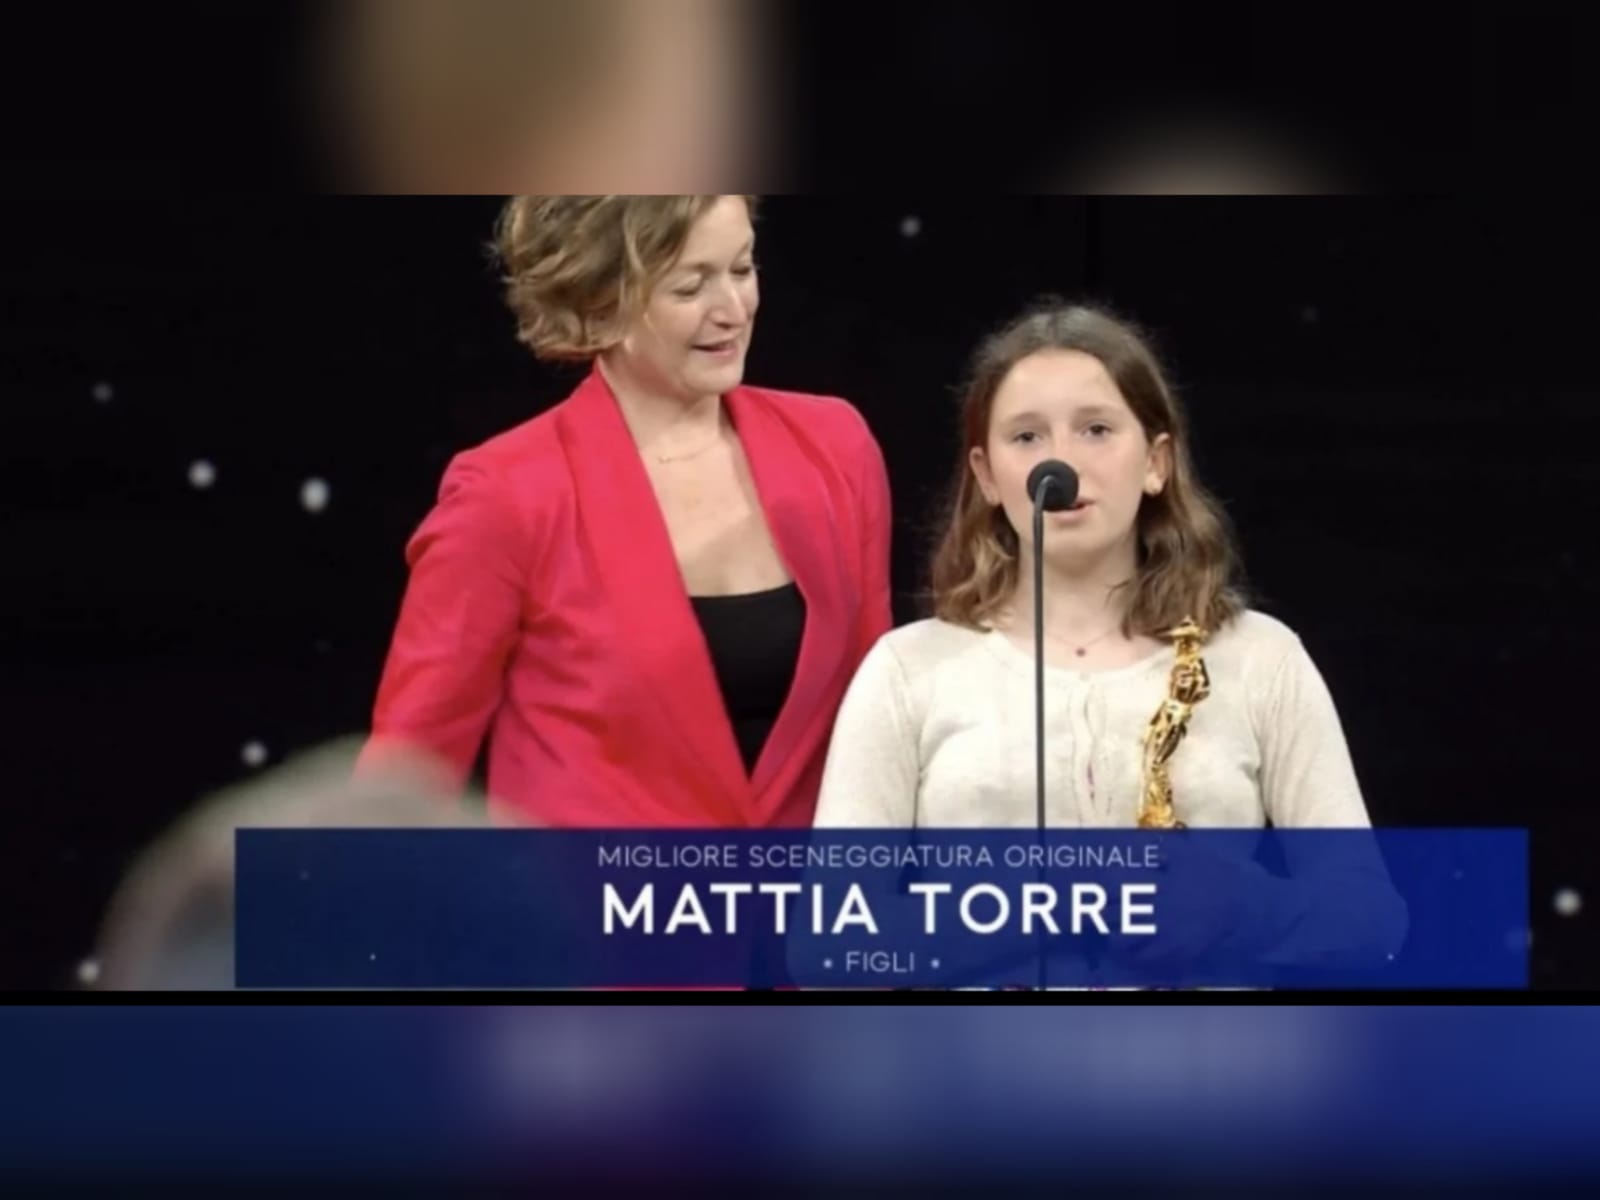 David di Donatello postumo per Mattia Torre: standing ovation per la figlia Emma